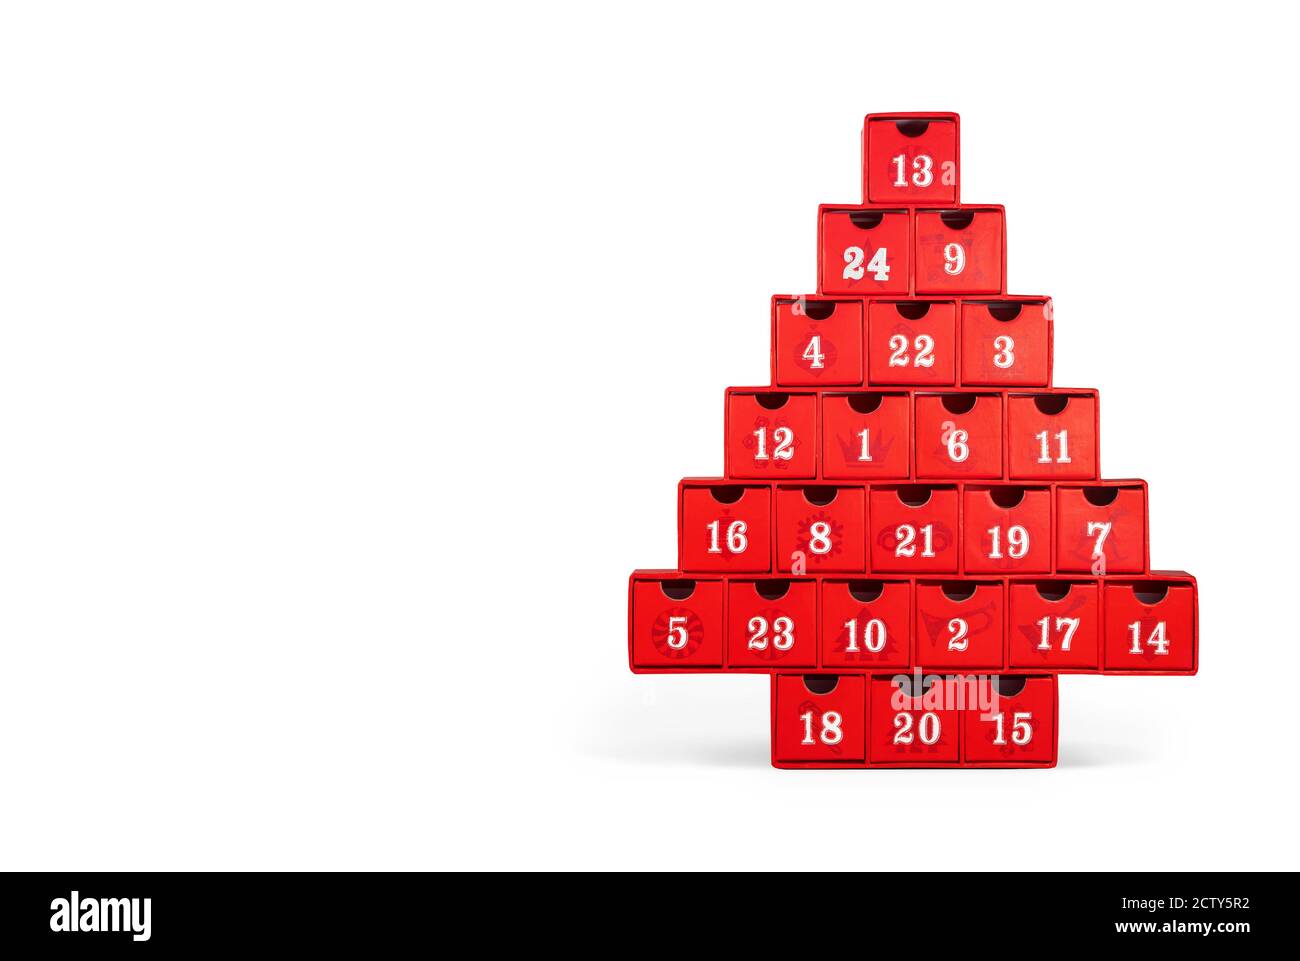 Calendario isolato dell'avvento. Albero di Natale rosso fatto fuori cartone con numeri bianchi. Tutti i numeri visibili. Foto Stock